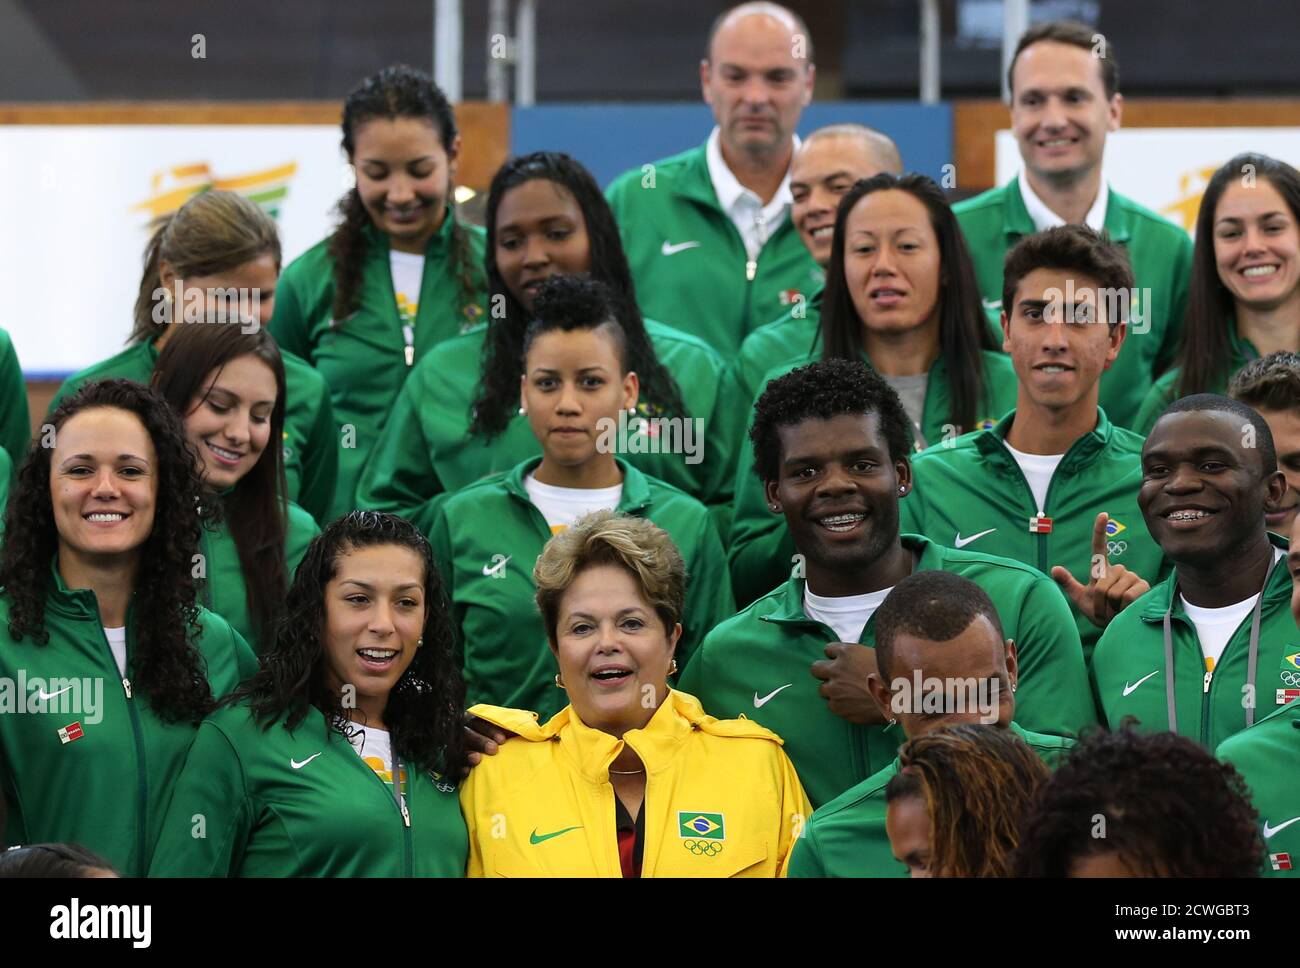 La présidente brésilienne Dilma Rousseff (C) présente une photo avec les athlètes olympiques brésiliens au centre sportif Crystal Palace de Londres, le 27 juillet 2012. Rousseff est en visite pour assister à la cérémonie d'ouverture des Jeux Olympiques de Londres 2012. REUTERS/Sergio Moraes (GRANDE-BRETAGNE - Tags: SPORT JEUX OLYMPIQUES POLITIQUE) Banque D'Images